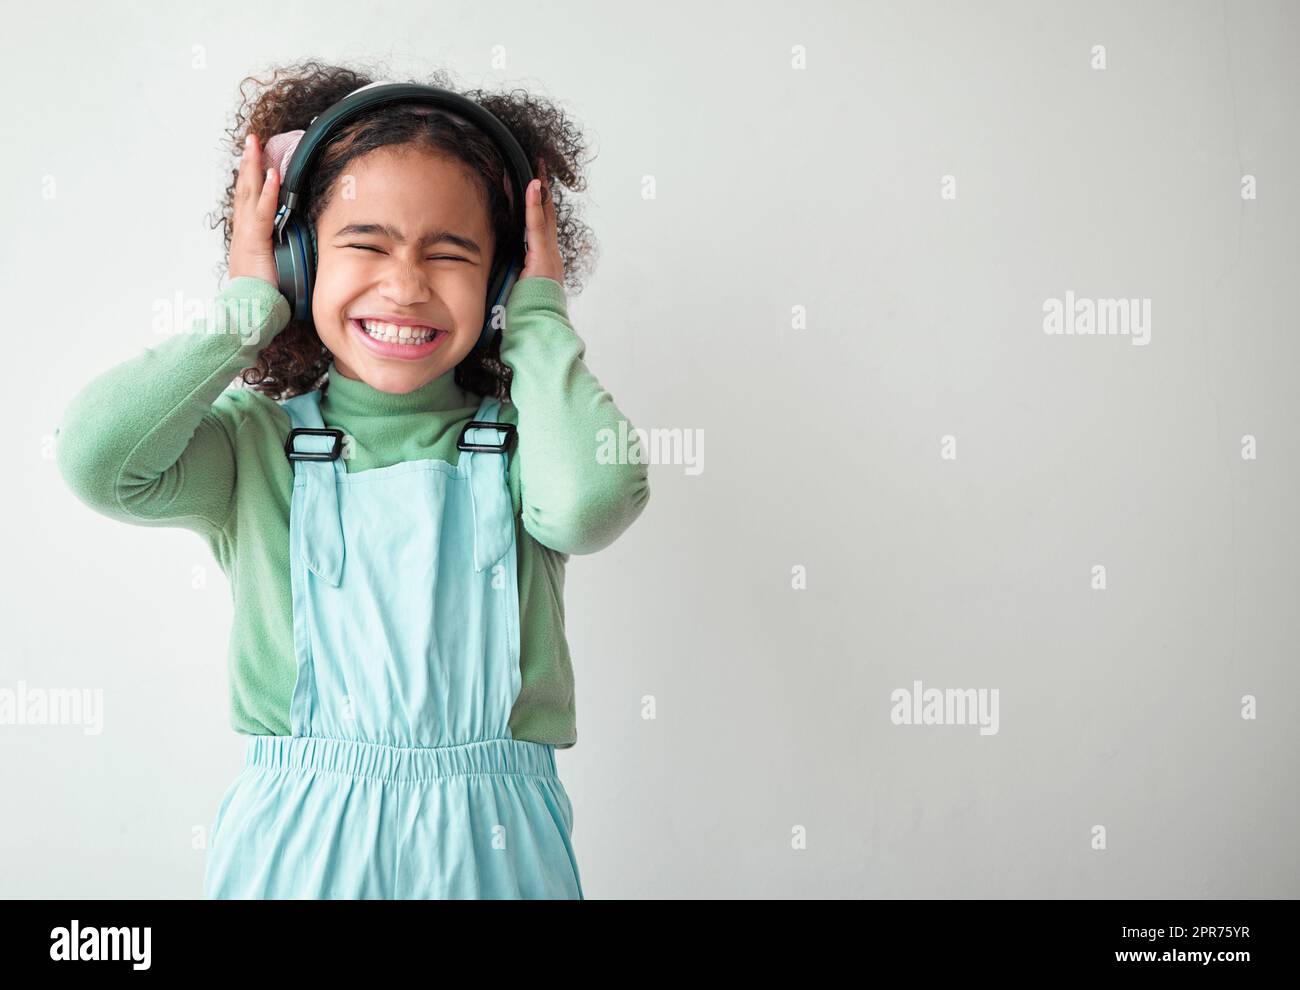 La gracia estaba en todos sus pasos. Fotografía de una niña de pie sola y escuchando música a través de los auriculares sobre un fondo gris. Foto de stock